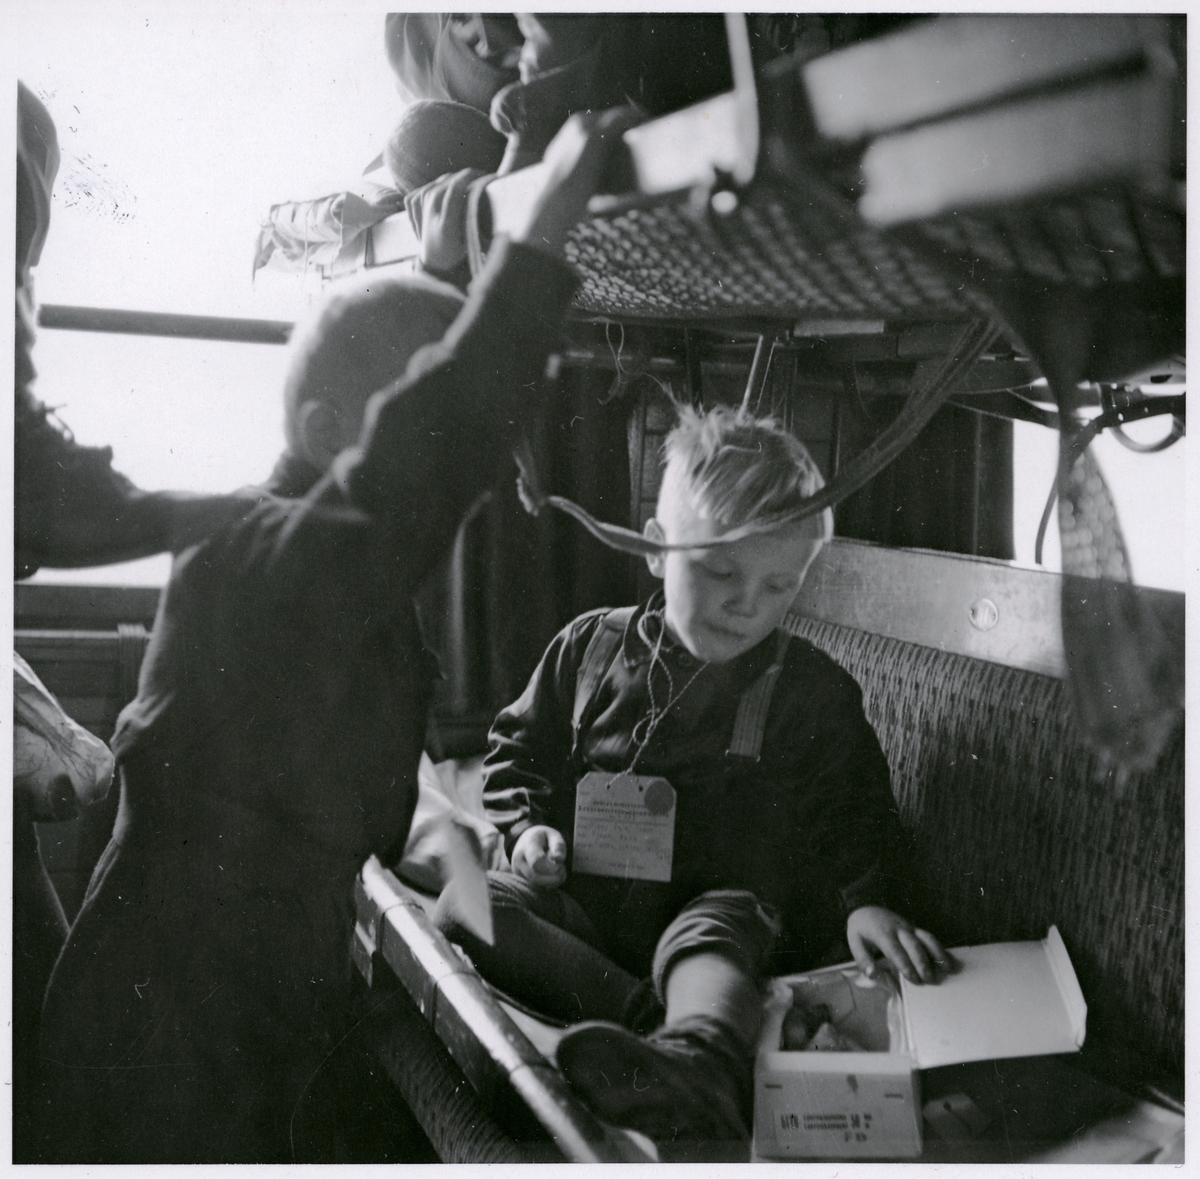 Ombord på barnevakueringståg från finland, mars 1944.